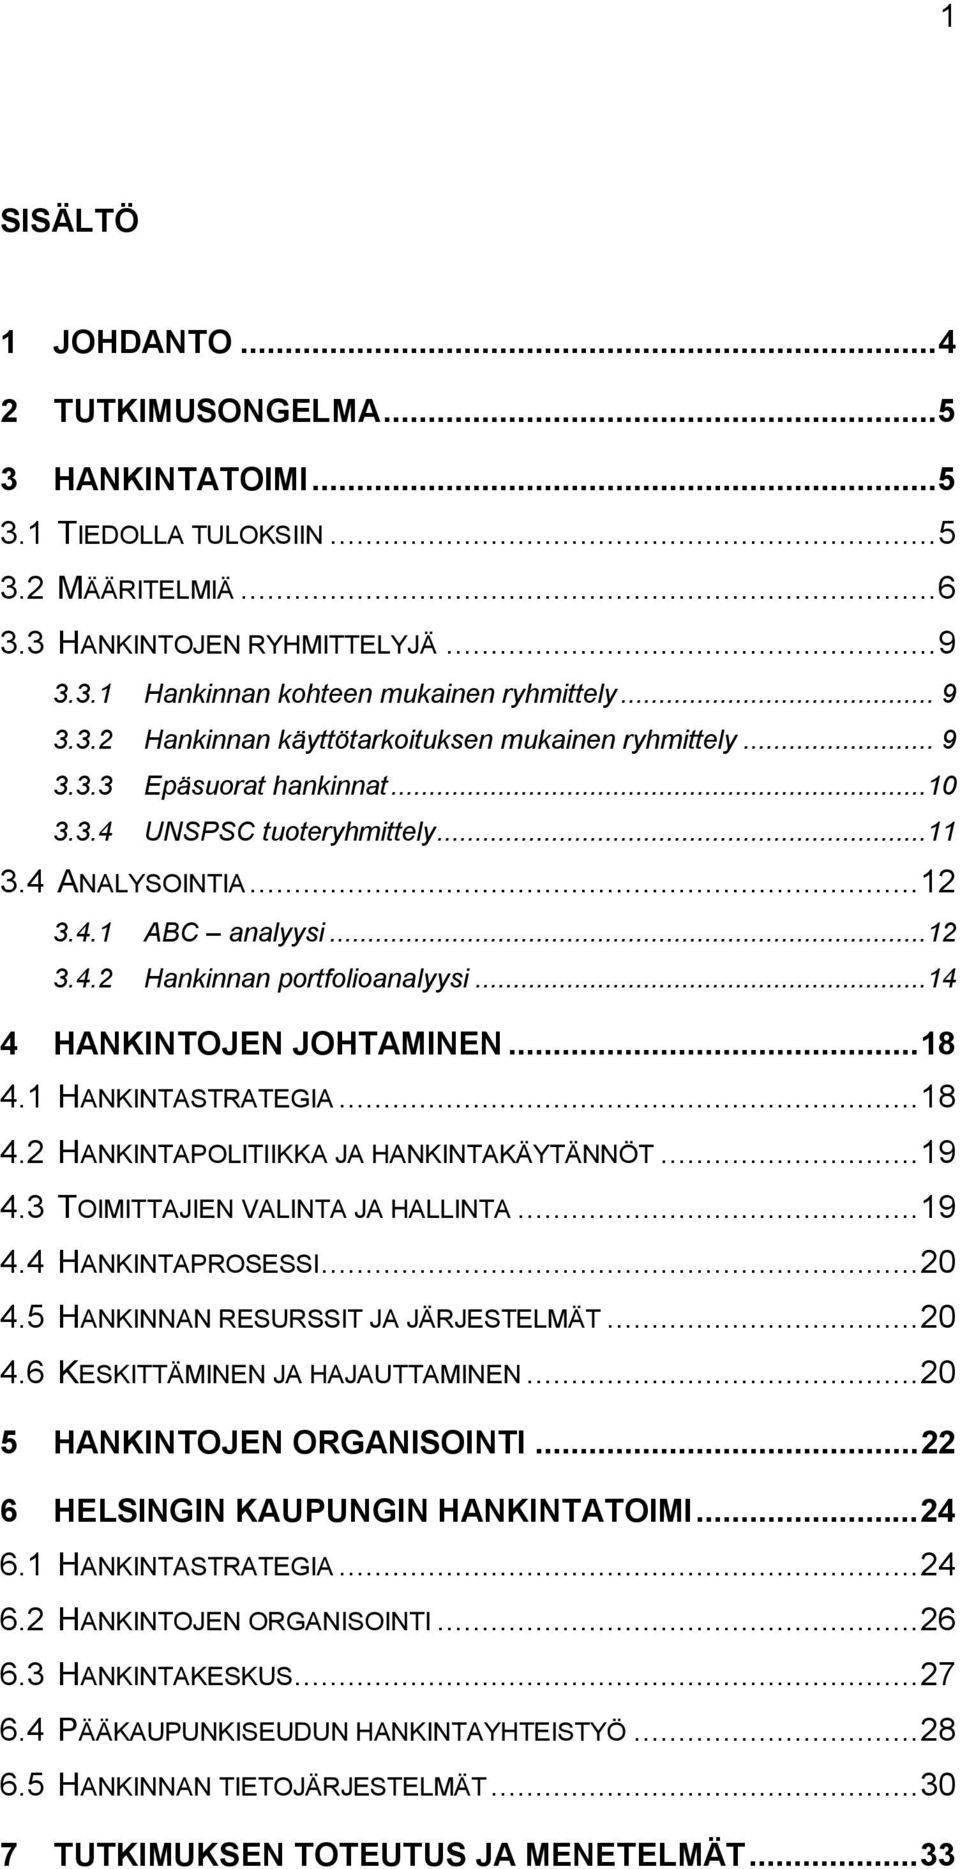 1 HANKINTASTRATEGIA...18 4.2 HANKINTAPOLITIIKKA JA HANKINTAKÄYTÄNNÖT...19 4.3 TOIMITTAJIEN VALINTA JA HALLINTA...19 4.4 HANKINTAPROSESSI...20 4.5 HANKINNAN RESURSSIT JA JÄRJESTELMÄT...20 4.6 KESKITTÄMINEN JA HAJAUTTAMINEN.